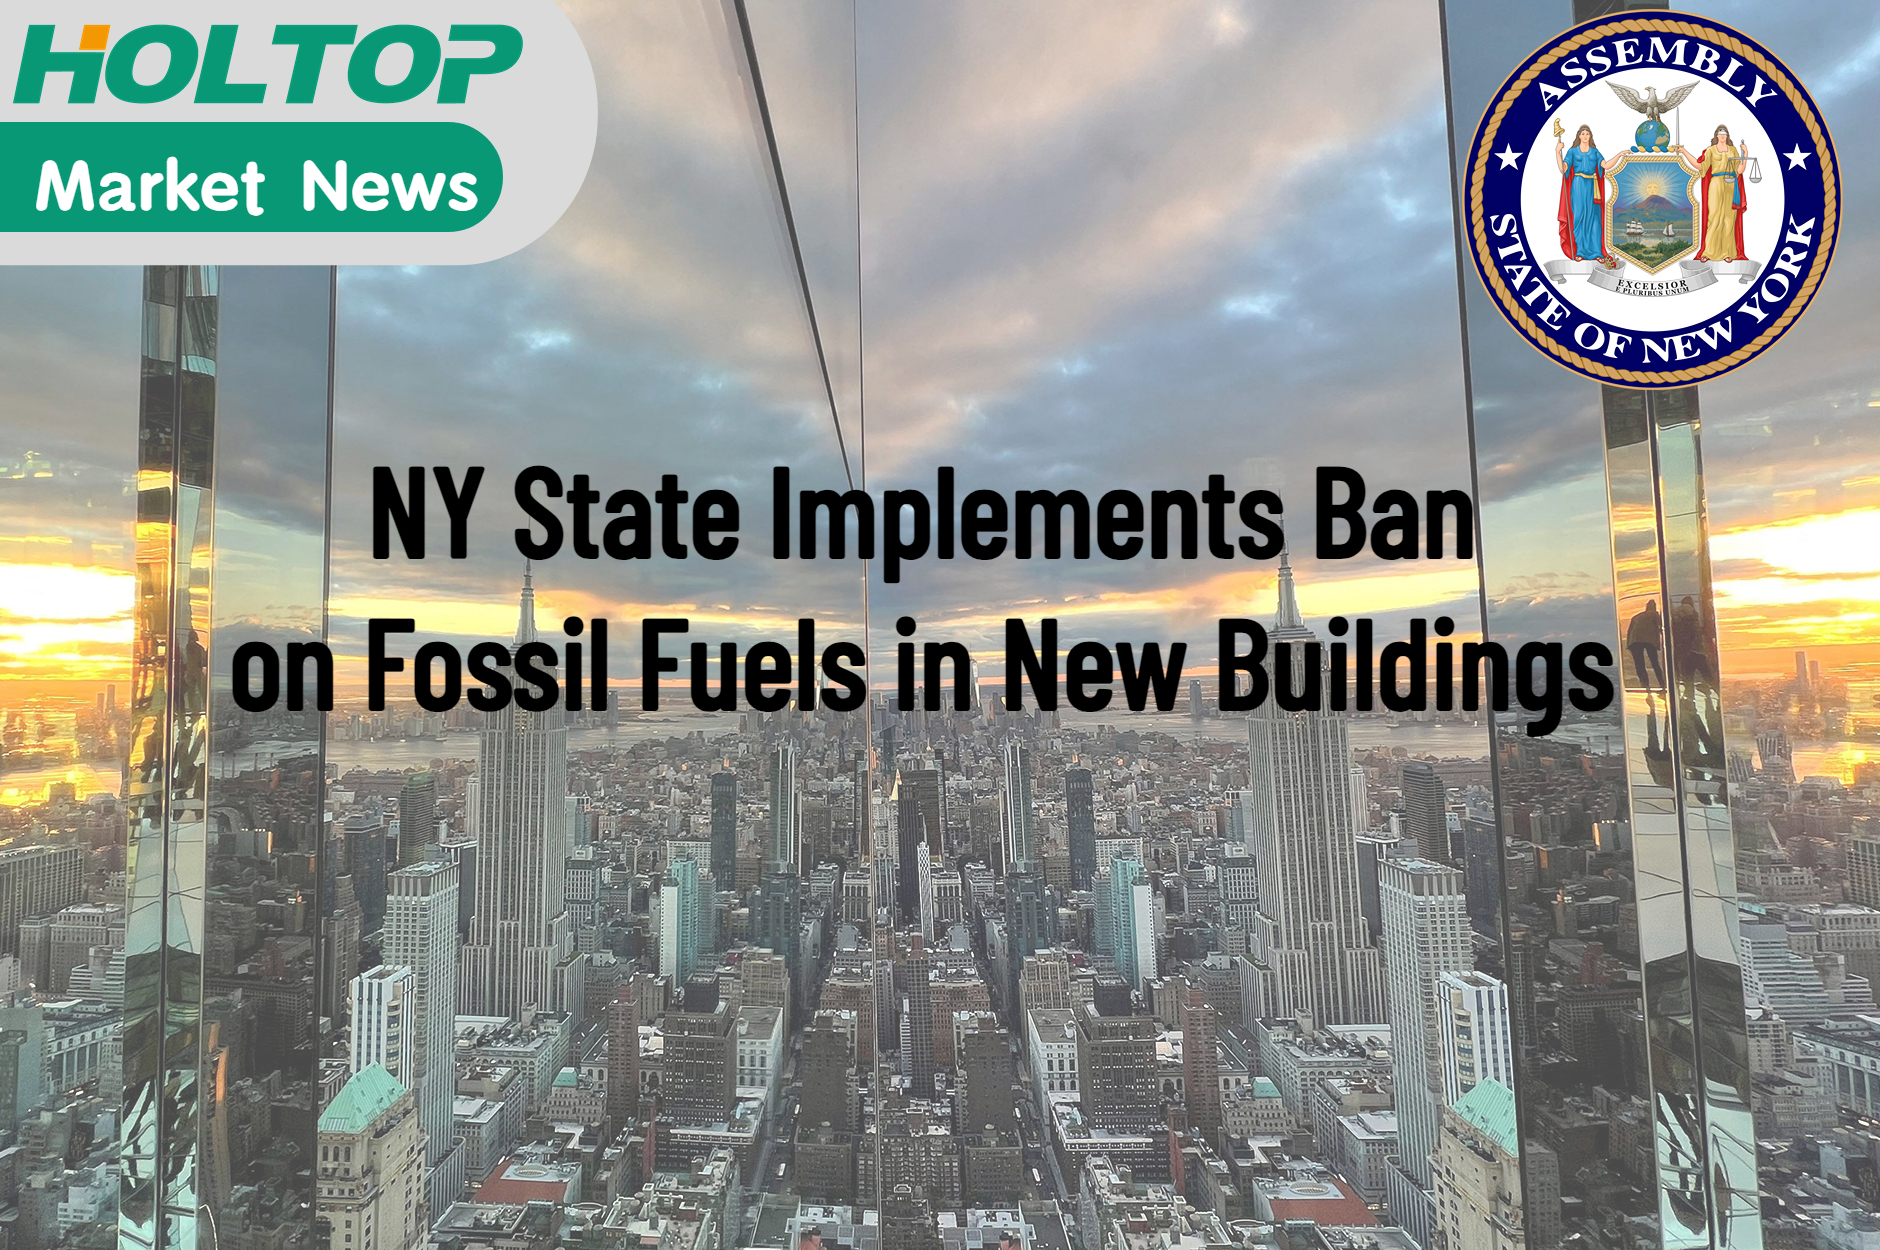 Estado de NY implementa proibição de combustíveis fósseis em novos edifícios